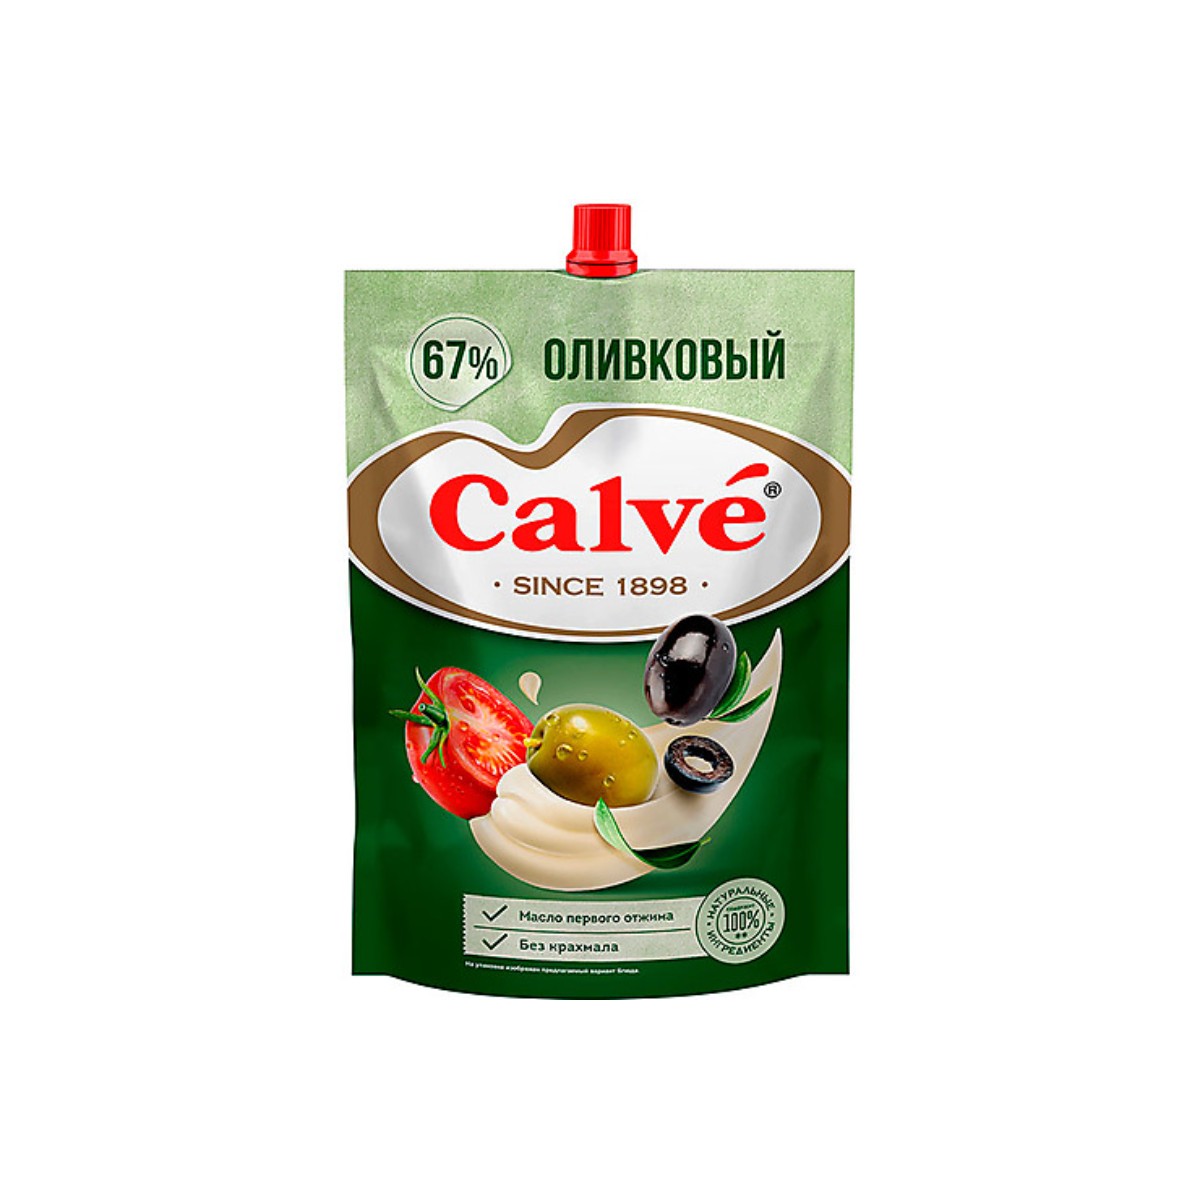 Майонез Calve Оливковый 67%, 2 шт по 700 г